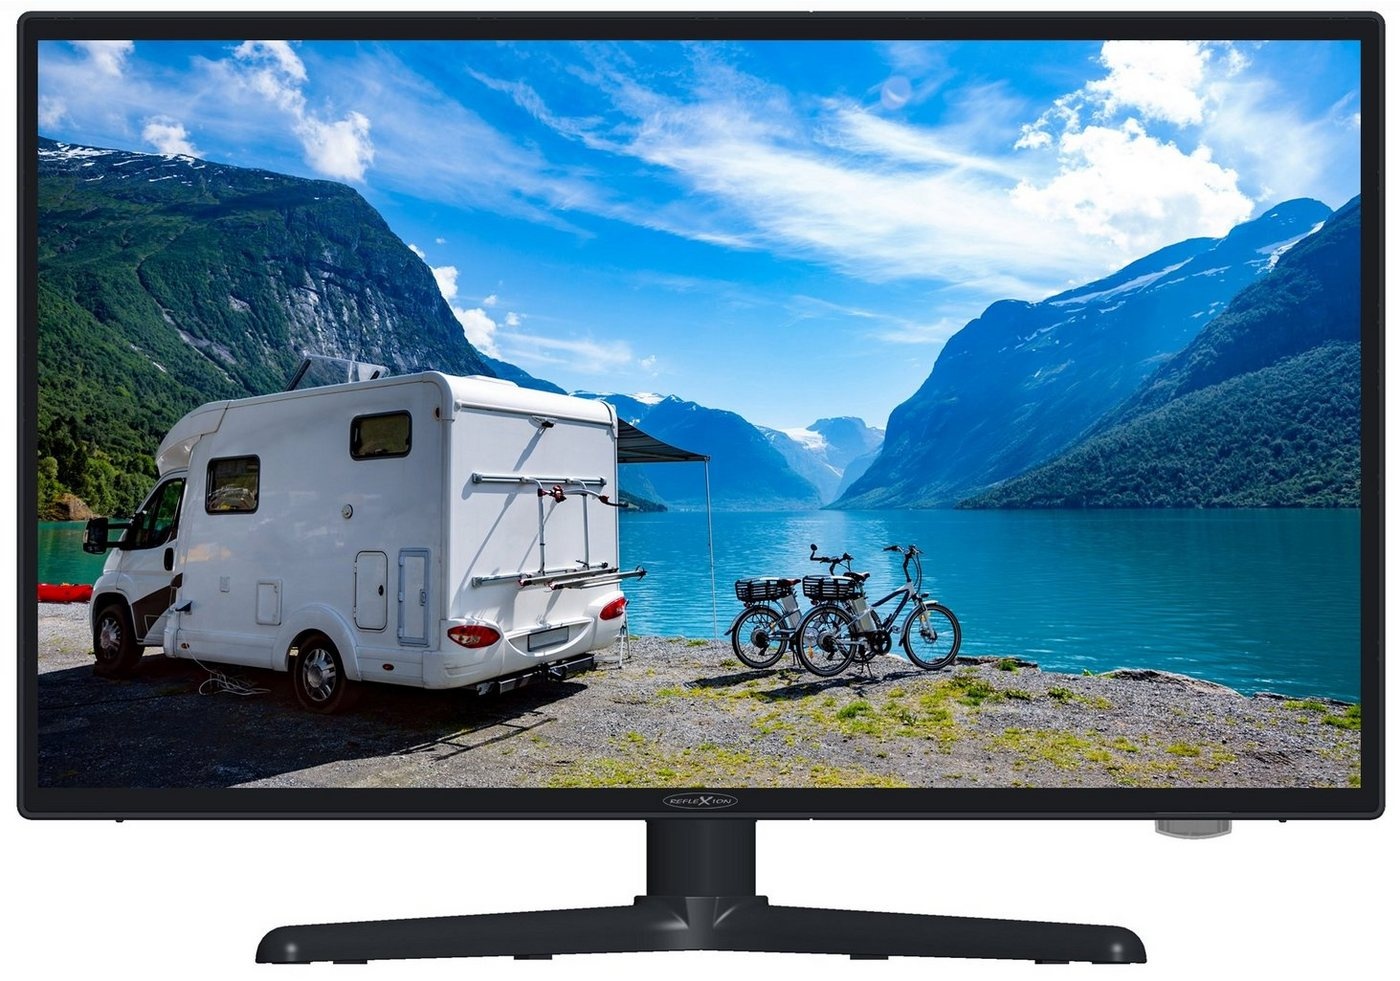 Reflexion LEDW22i+ LED-Fernseher (55,00 cm/22 Zoll, Full HD, Smart-TV, DC IN 12 Volt / 24 Volt, Netzteil 230 Volt, Fernseher für Wohnwagen, Wohnmobil, Camping, Caravan) schwarz